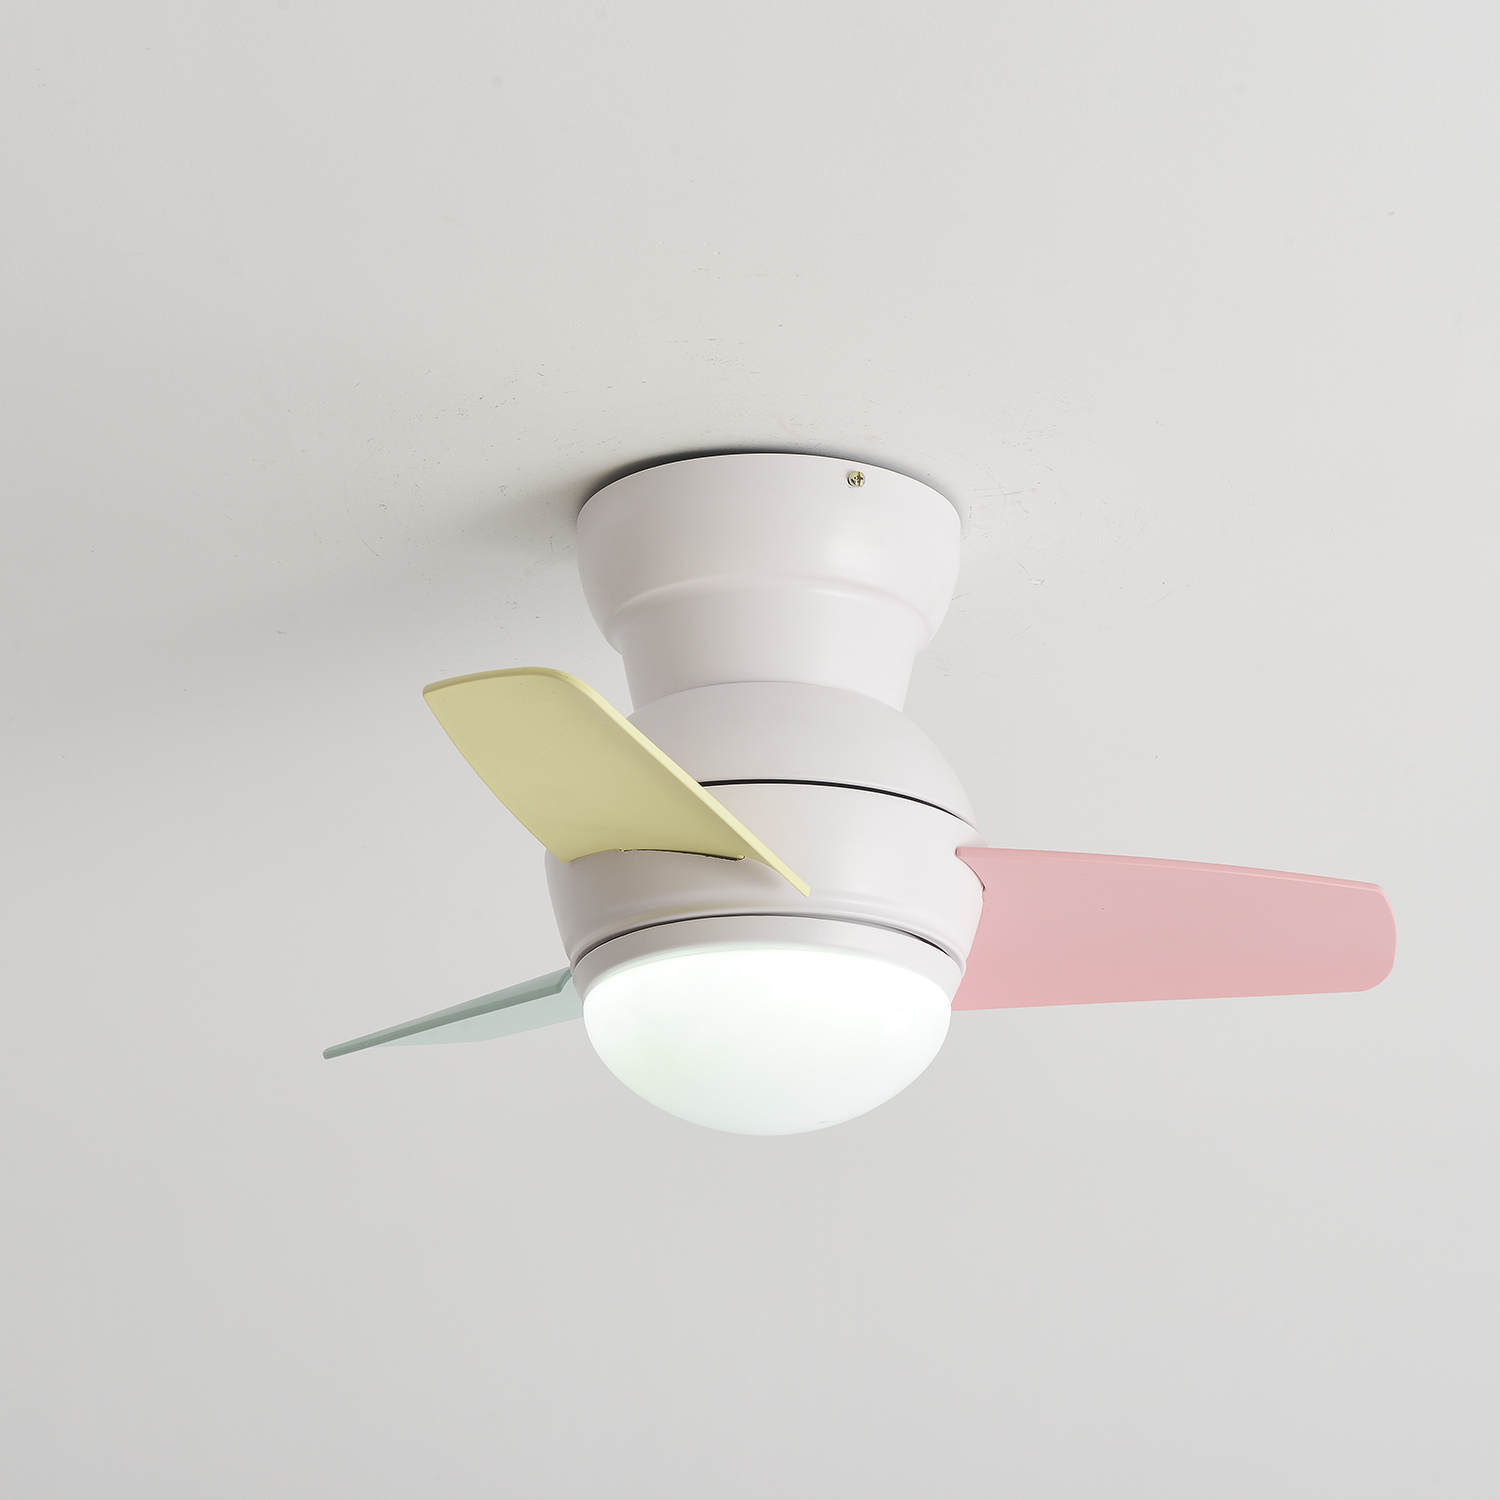 Small Ceiling Fan